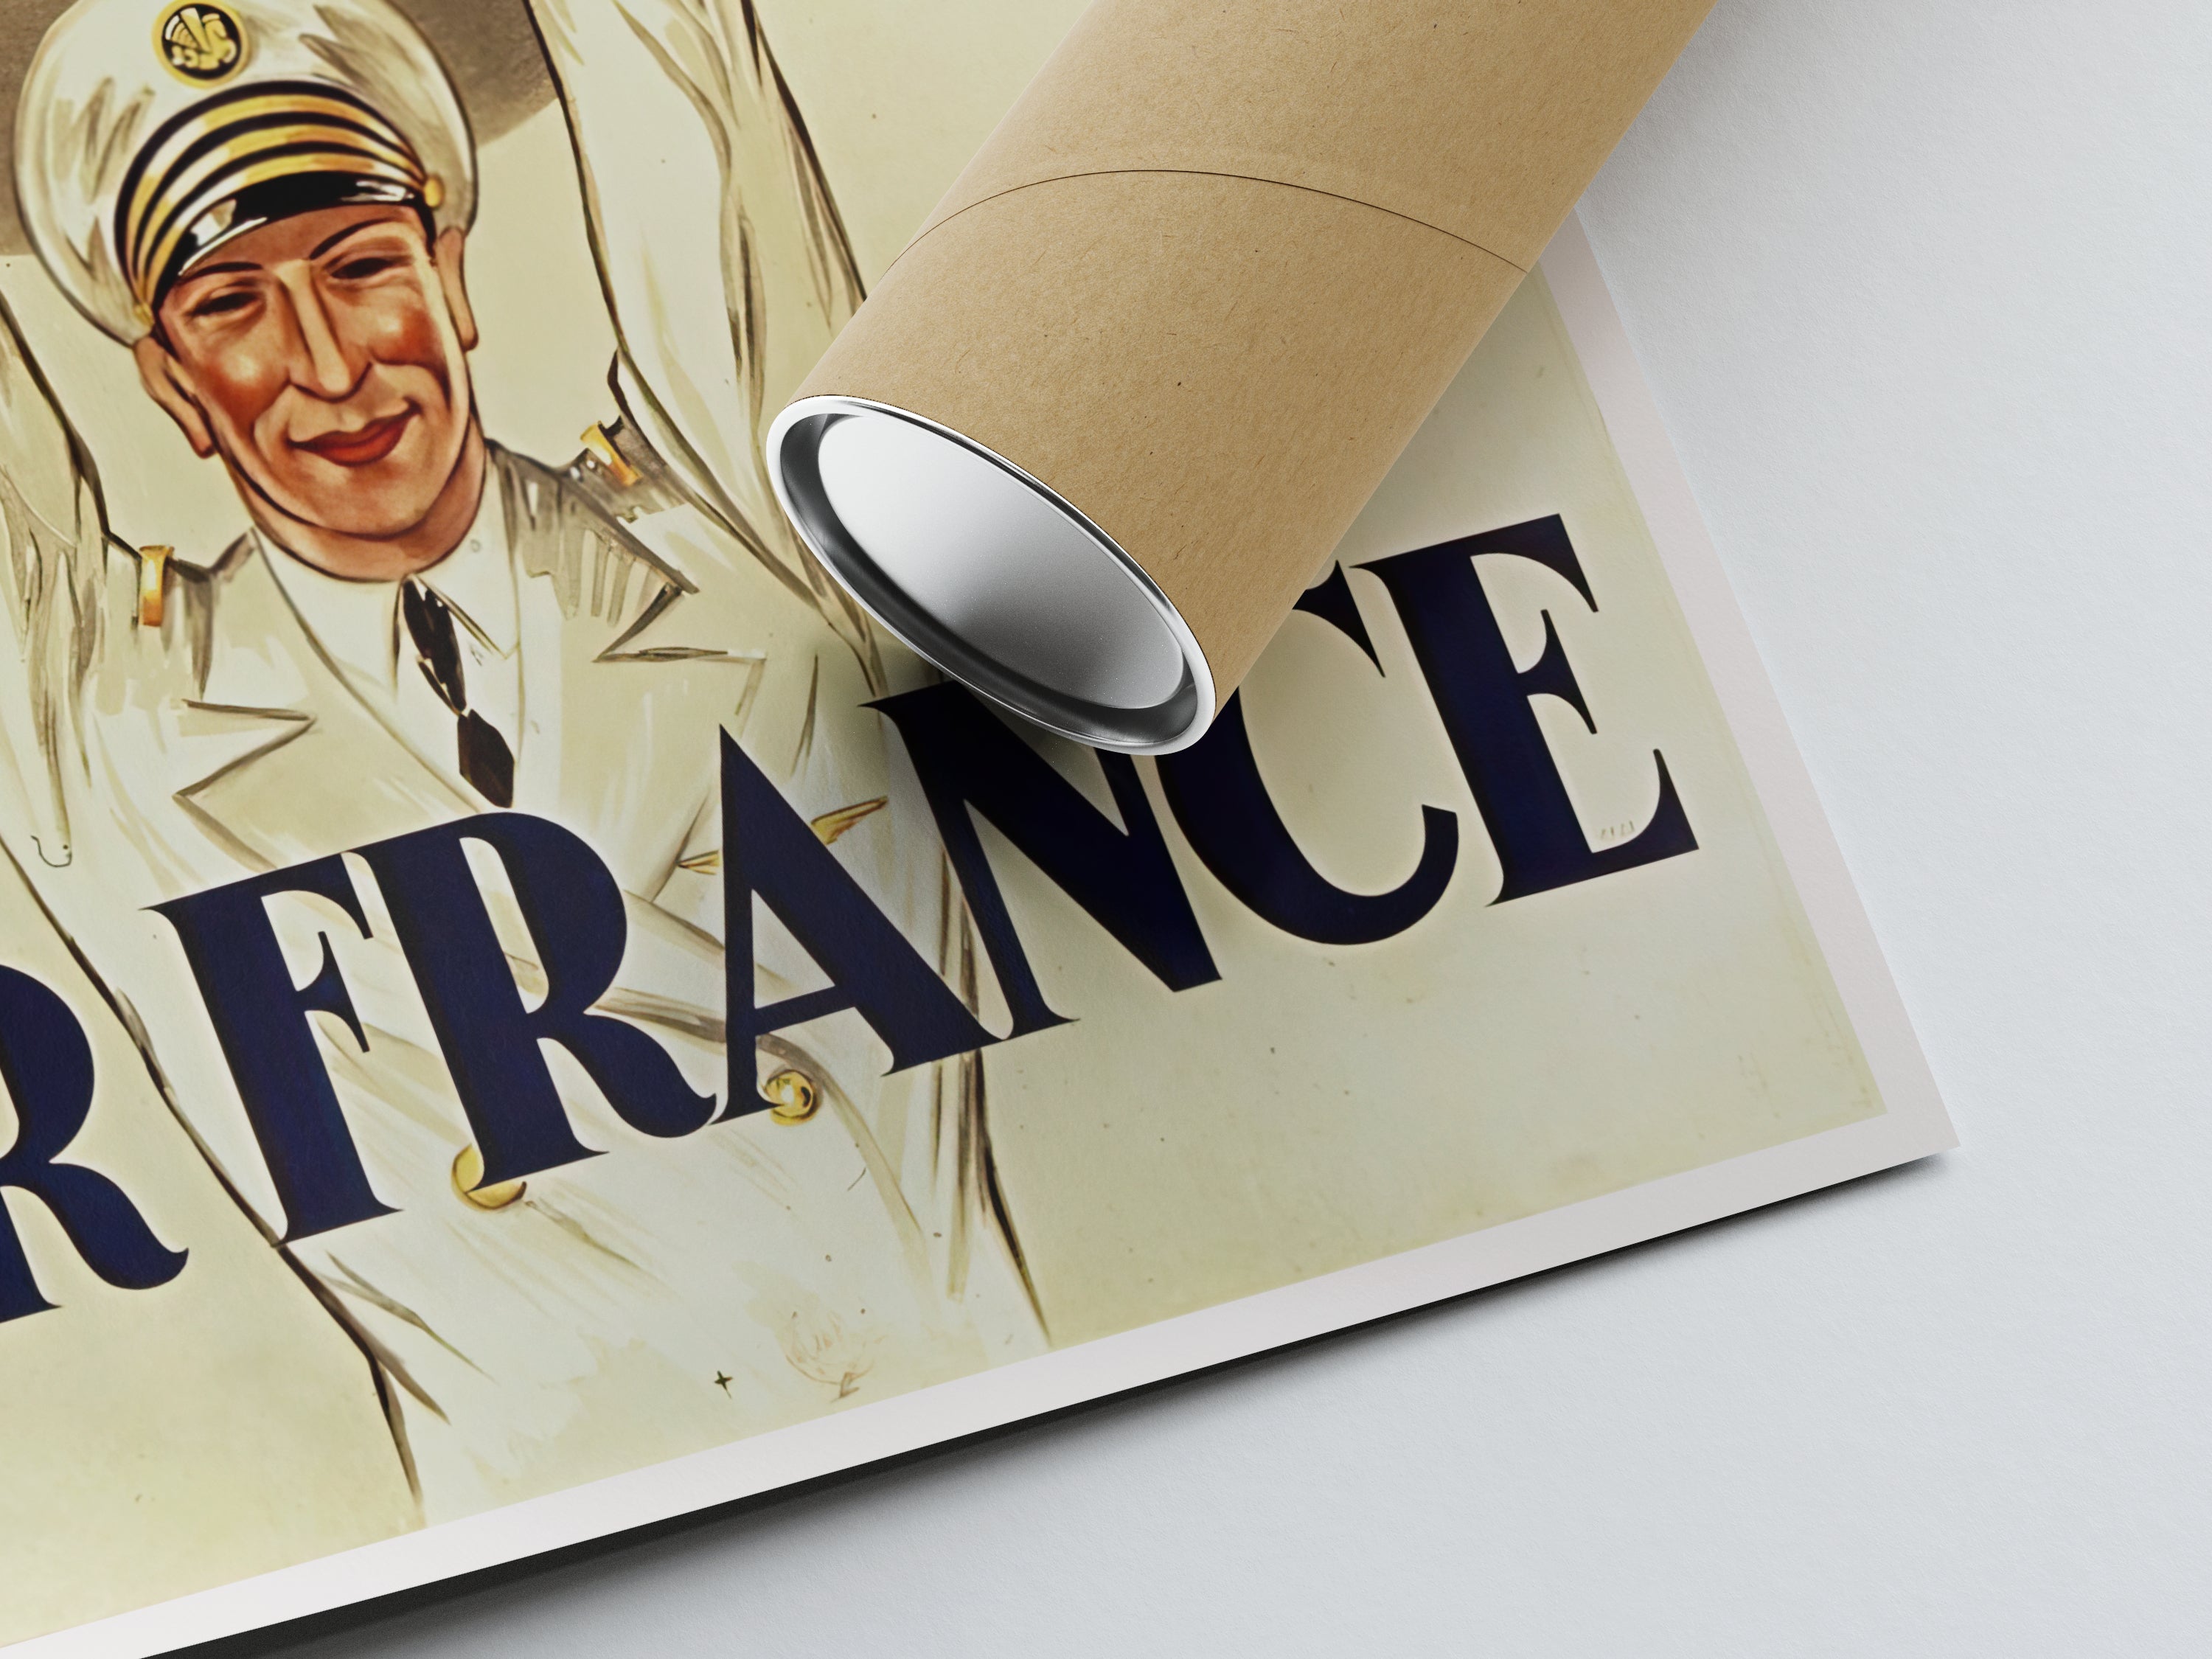 Affiche Vintage "Première Affiche Publicitaire Air France" - Dransy - Haute Définition - papier mat 230gr/m2